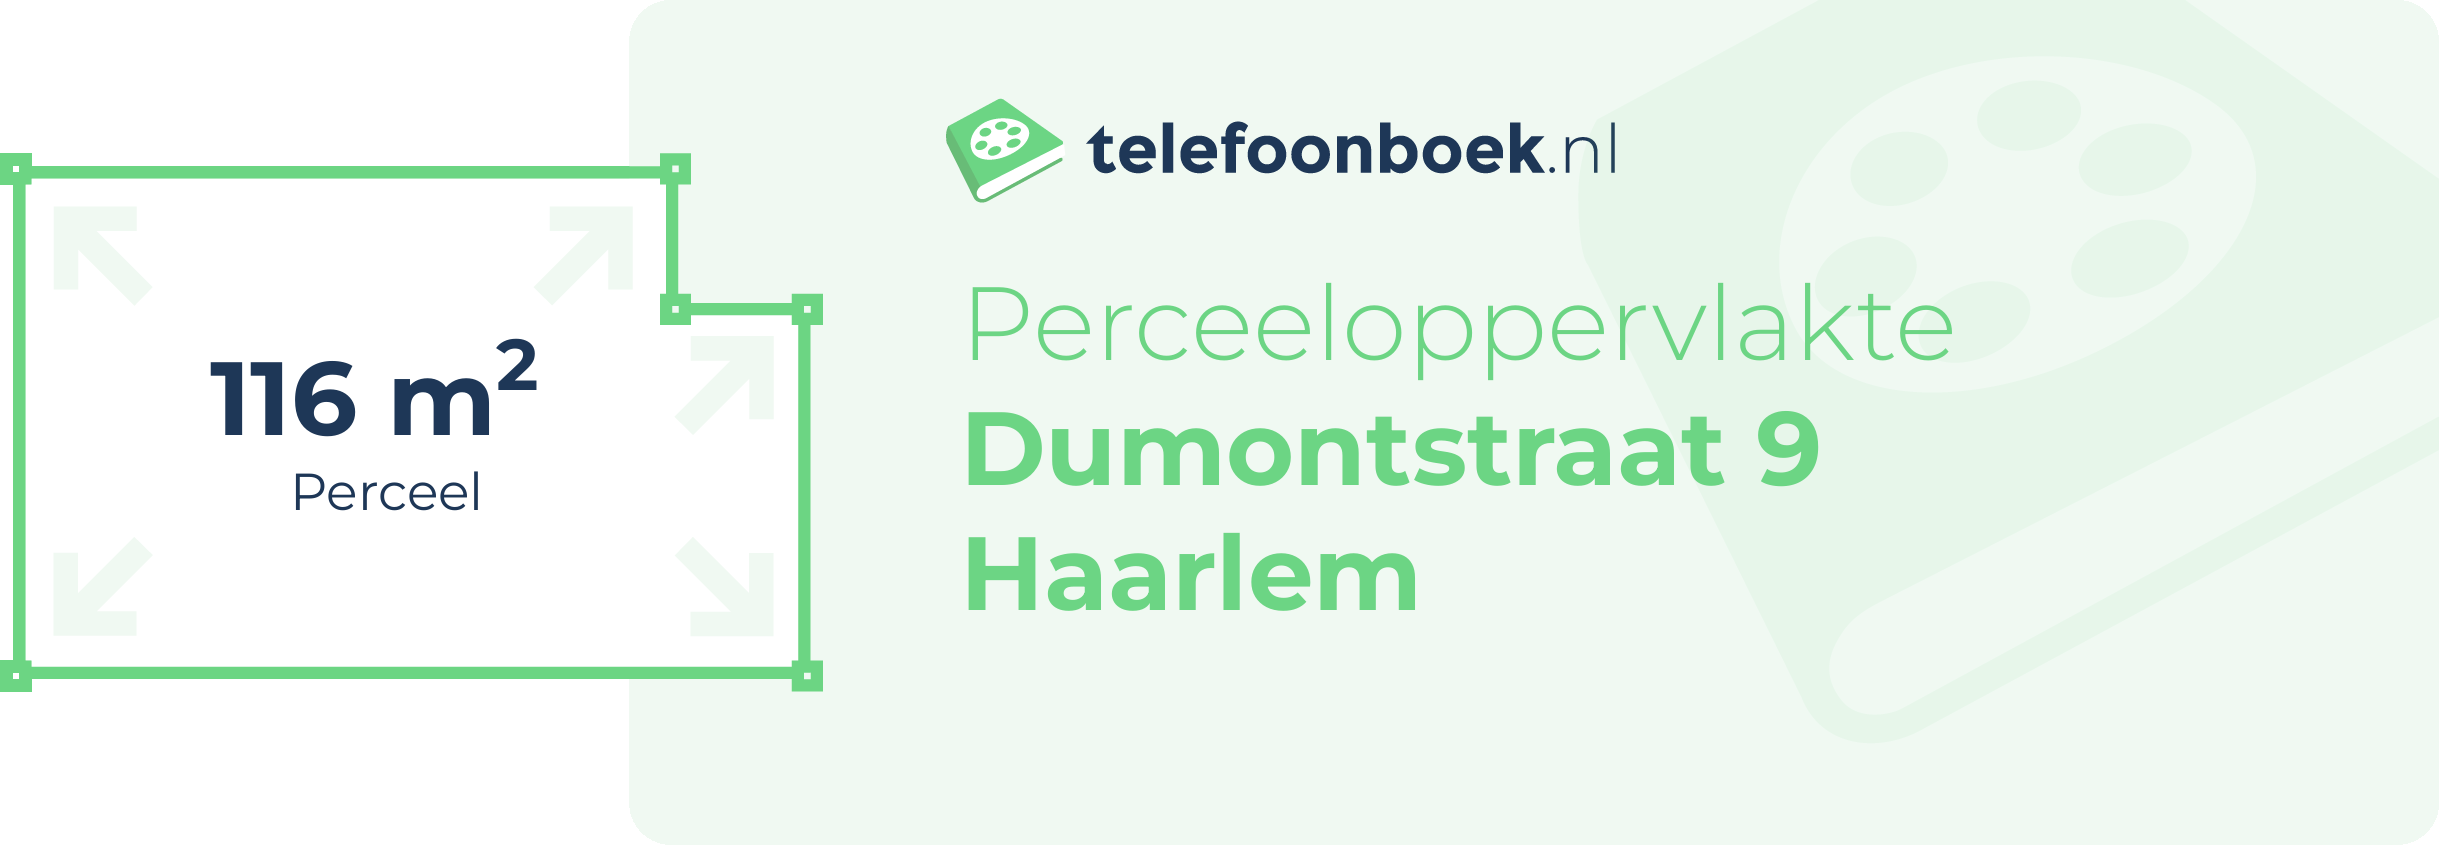 Perceeloppervlakte Dumontstraat 9 Haarlem